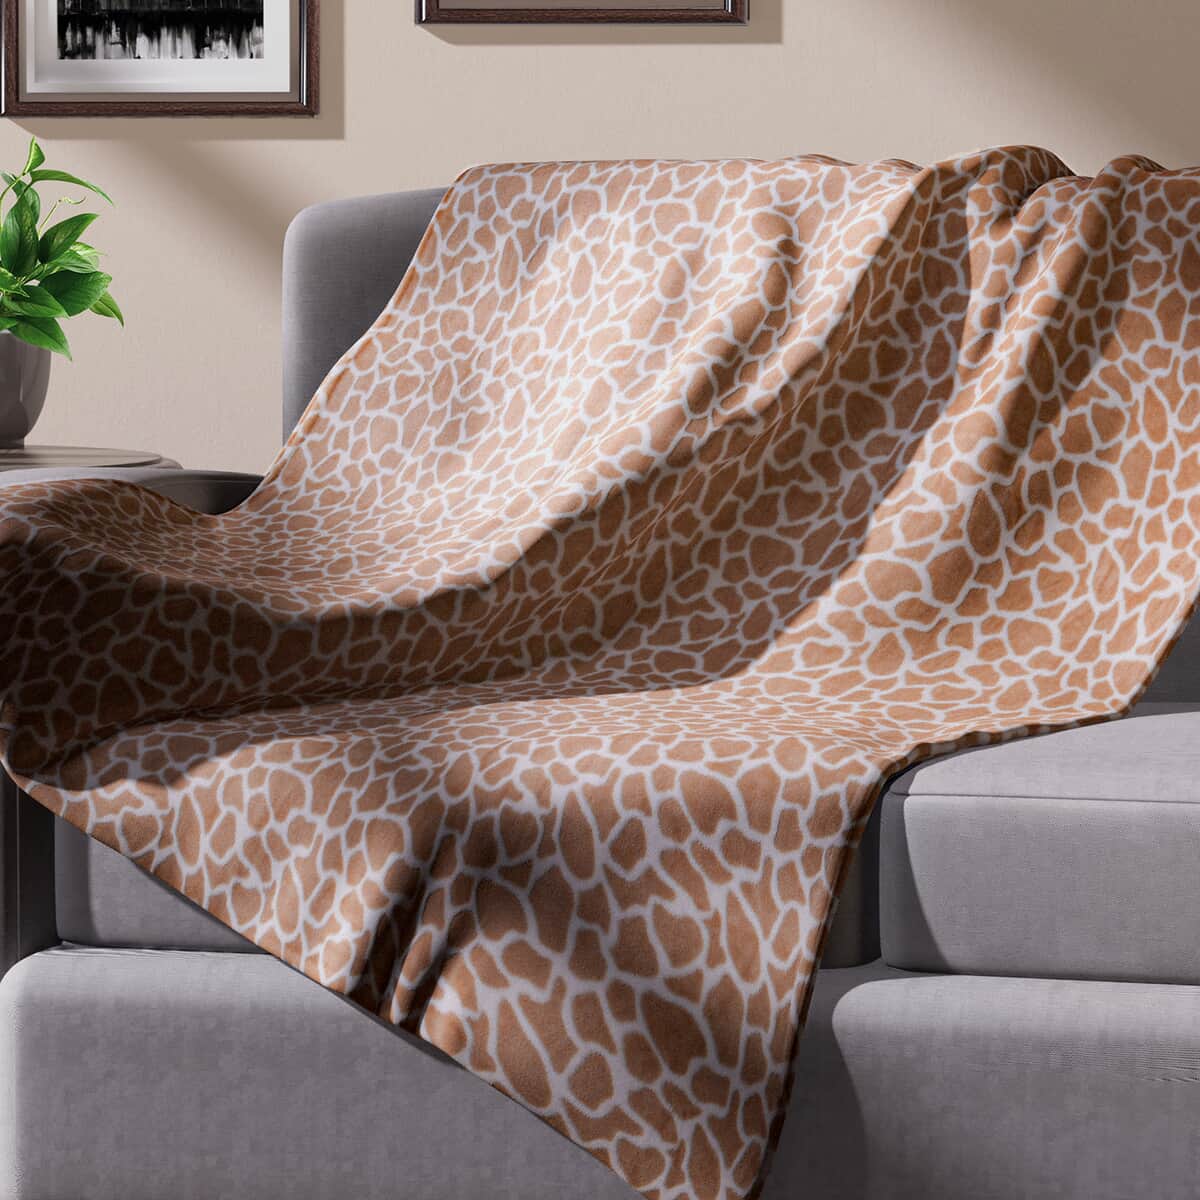 Homesmart Designer Inspired Giraffe Pattern Super Soft and Warm Printed Flannel Blanket image number 0